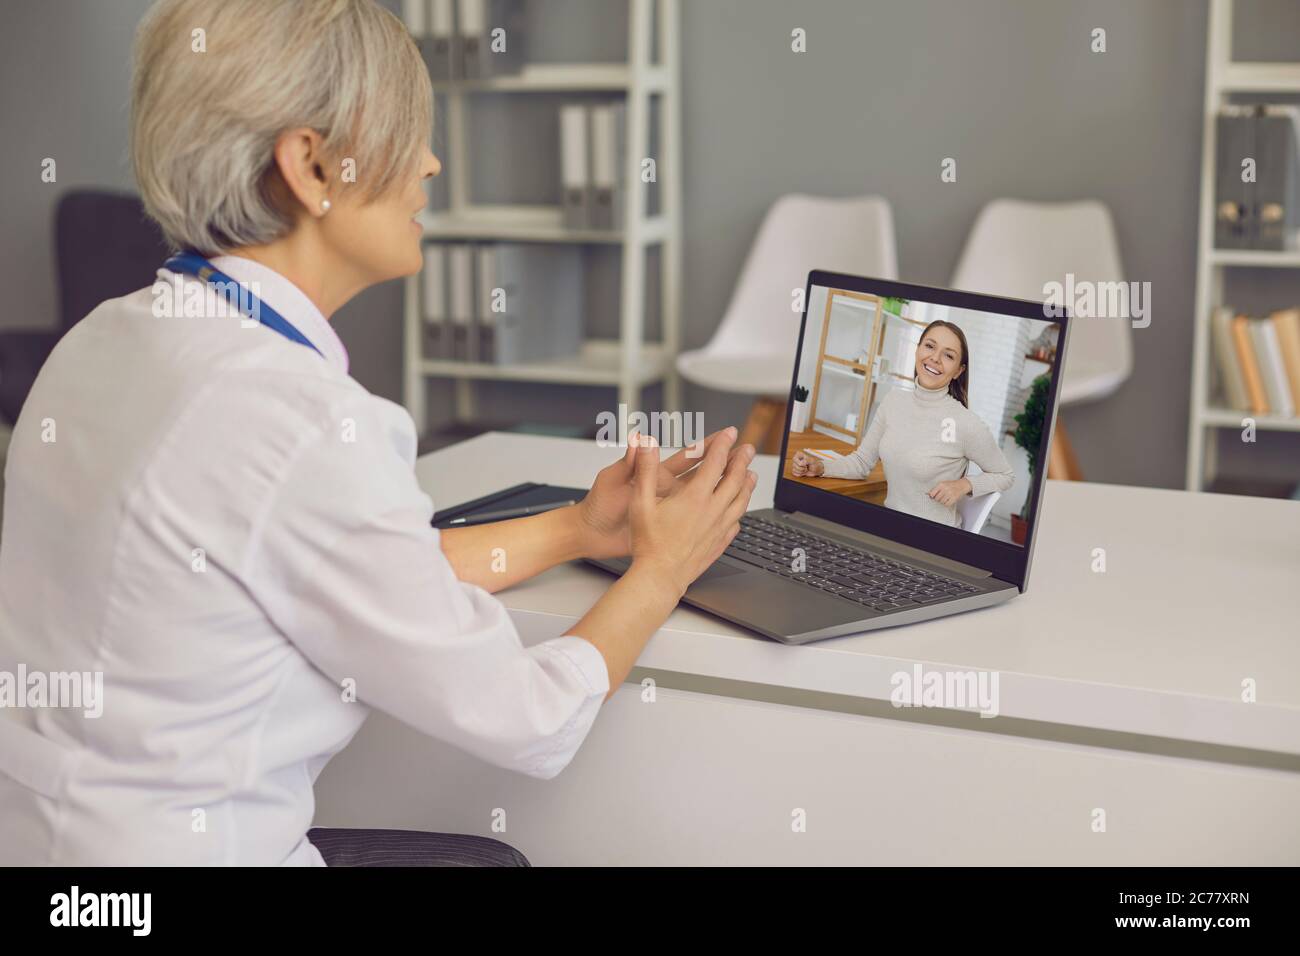 Médecin senior sur chat vidéo avec un jeune patient à l'hôpital. Medic parlant à un client sur un ordinateur portable depuis son bureau Banque D'Images